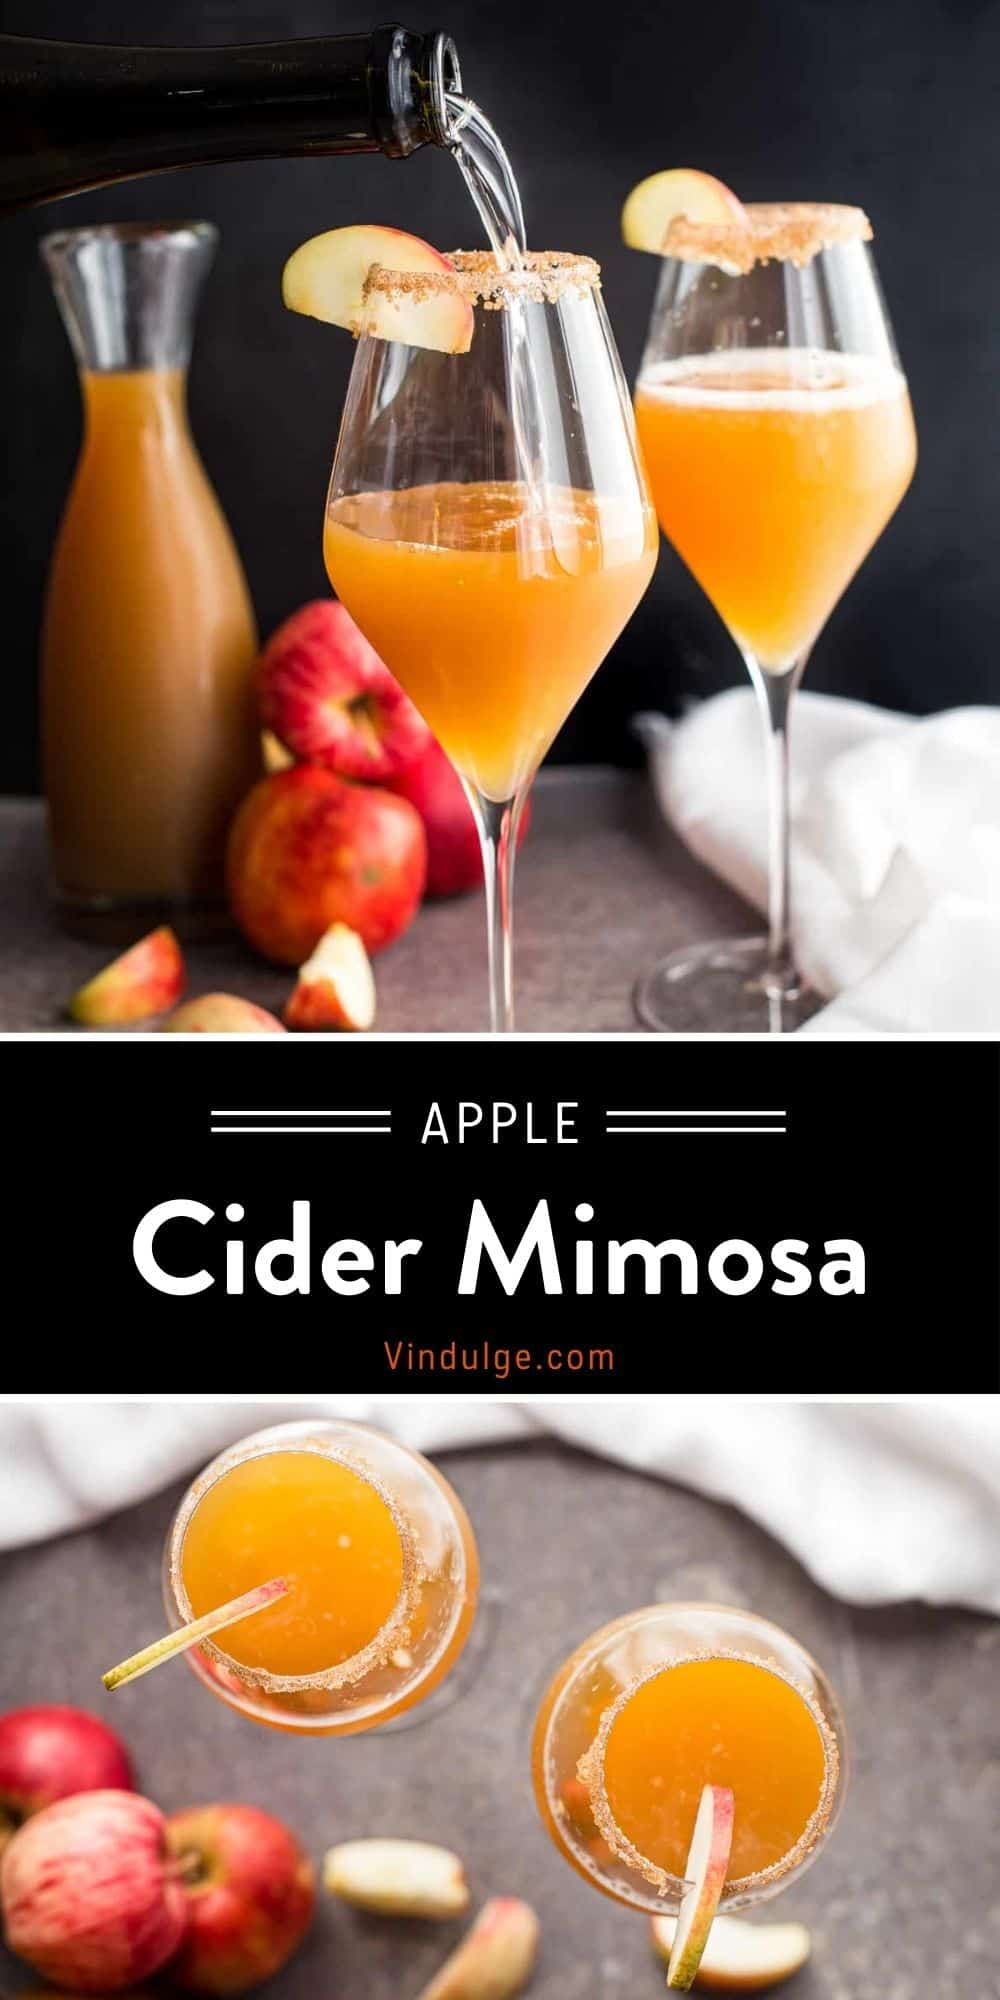 apple-cider-mimosa-the-perfect-apple-cider-cocktail-vindulge